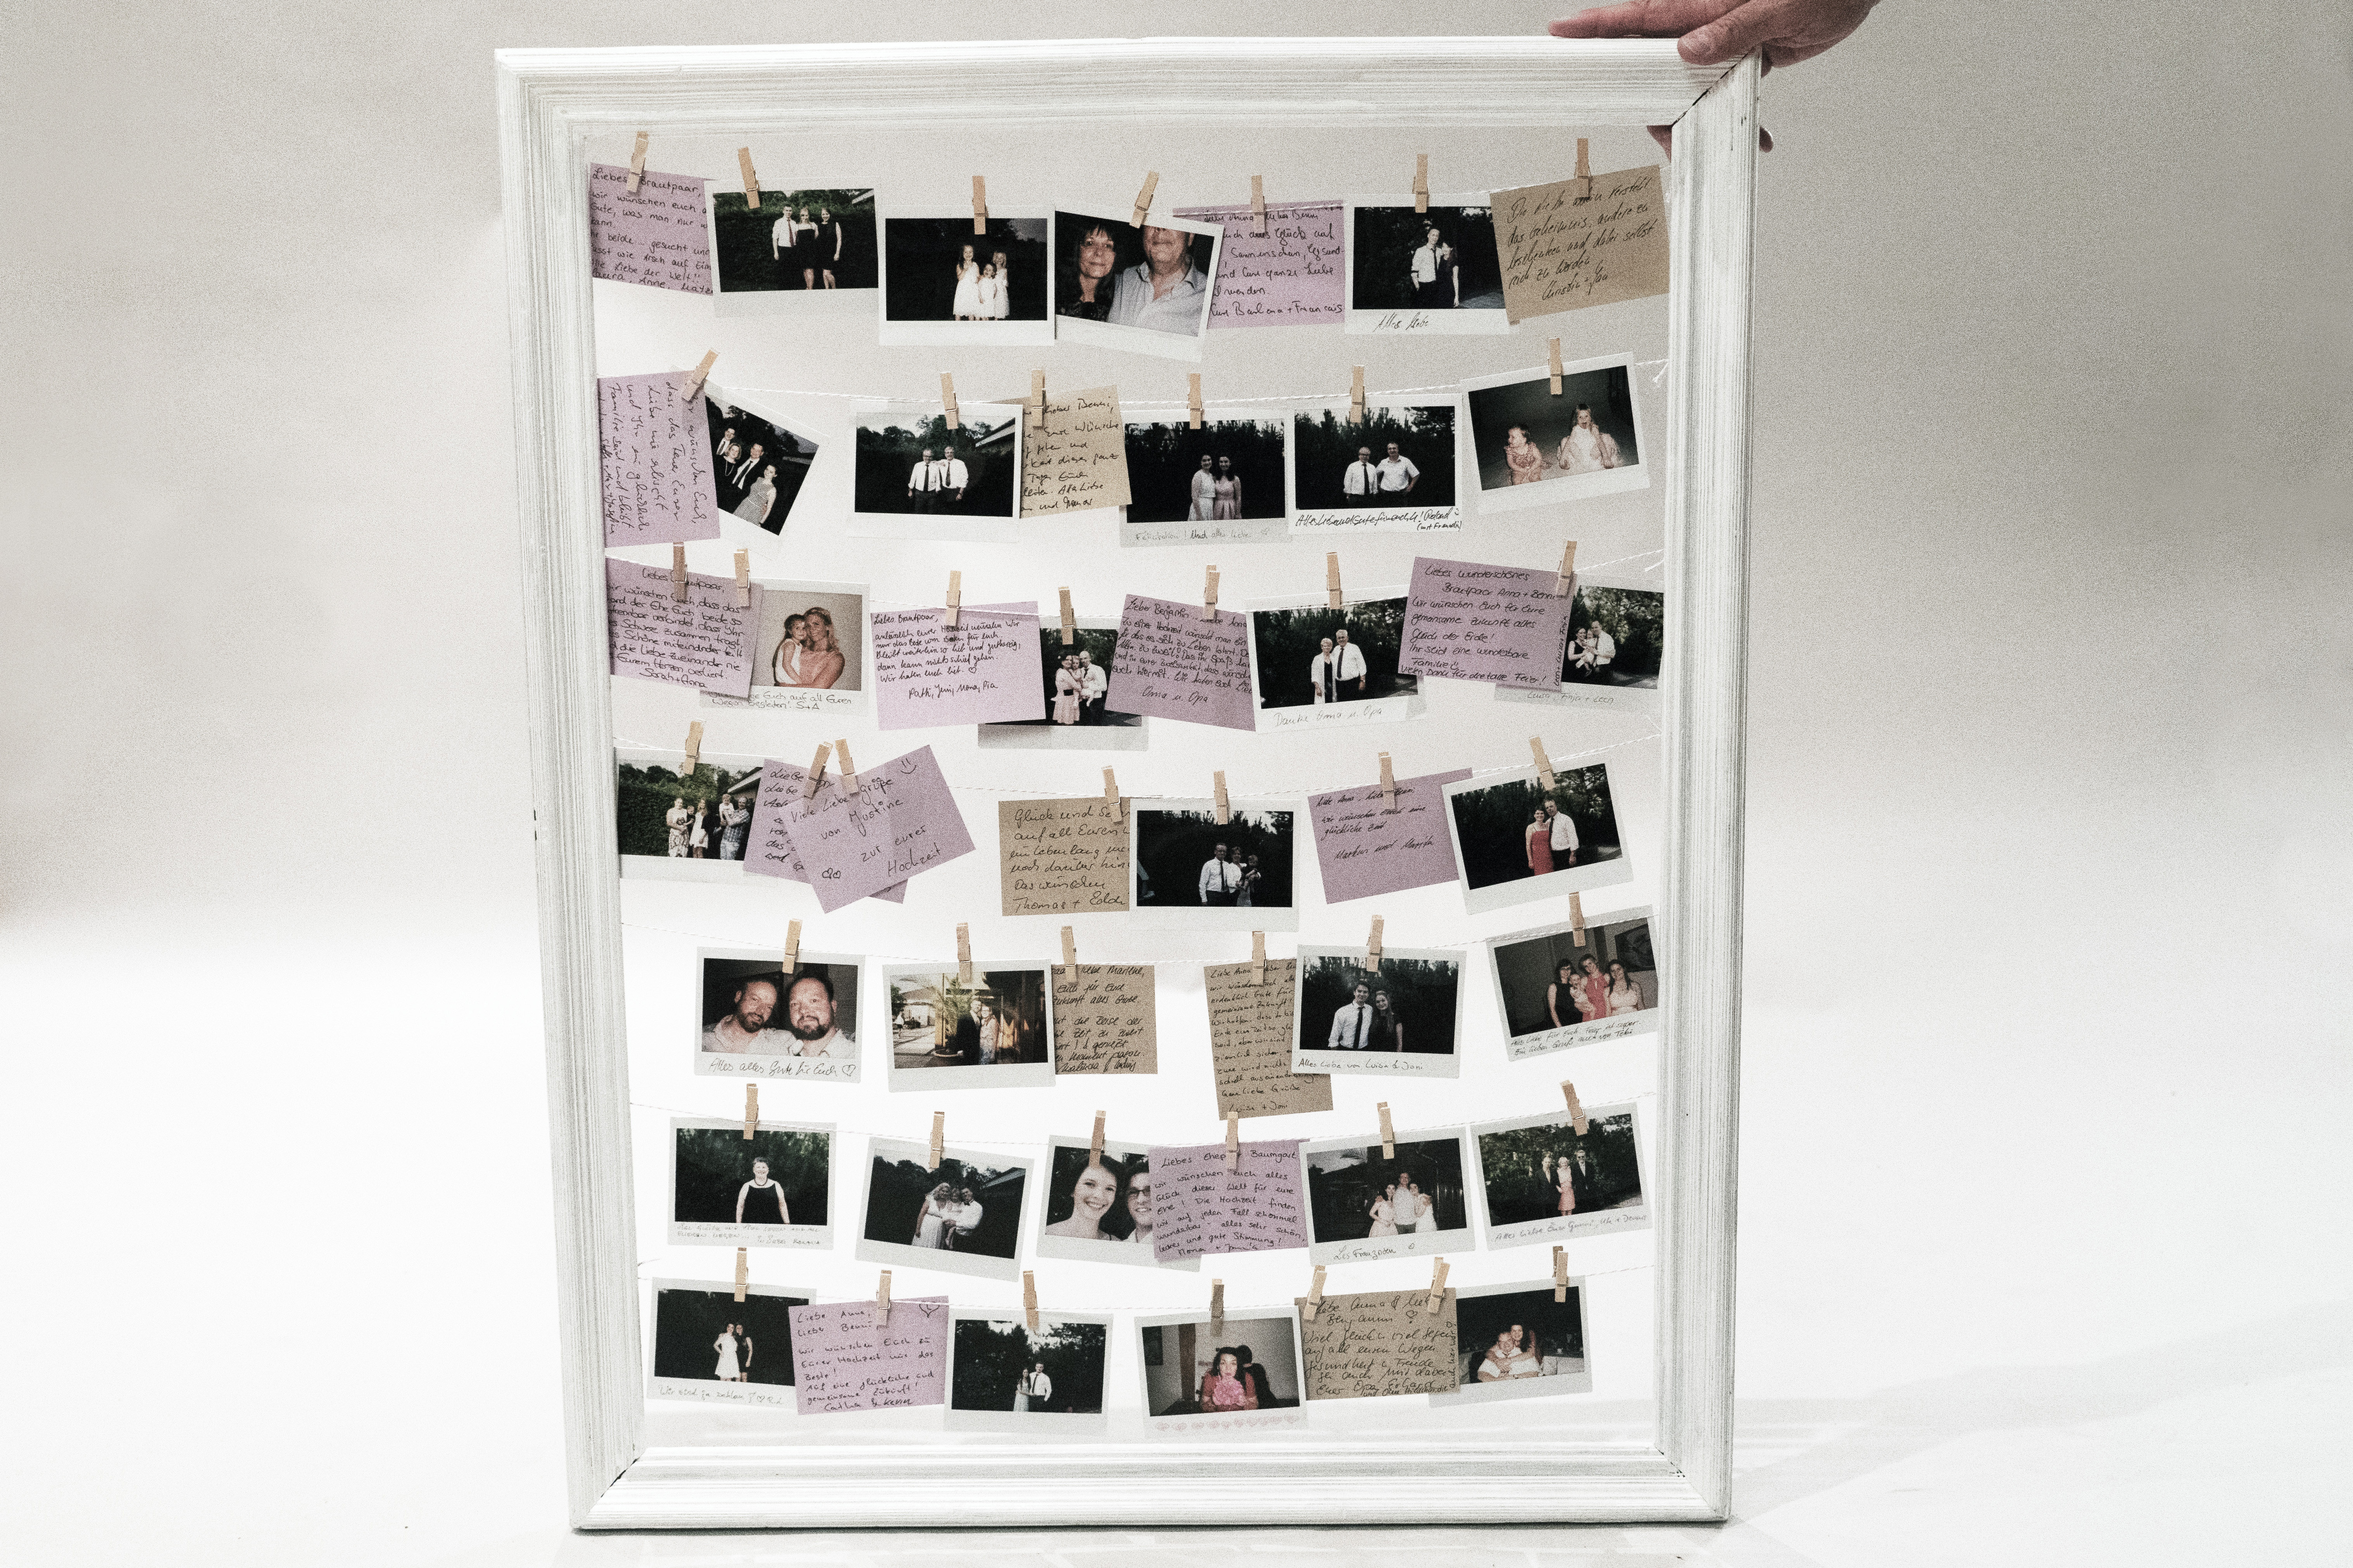 Überraschung Hochzeit Beste Freundin
 DIY Hochzeit Gästebuch selbst gestalten Polaroid